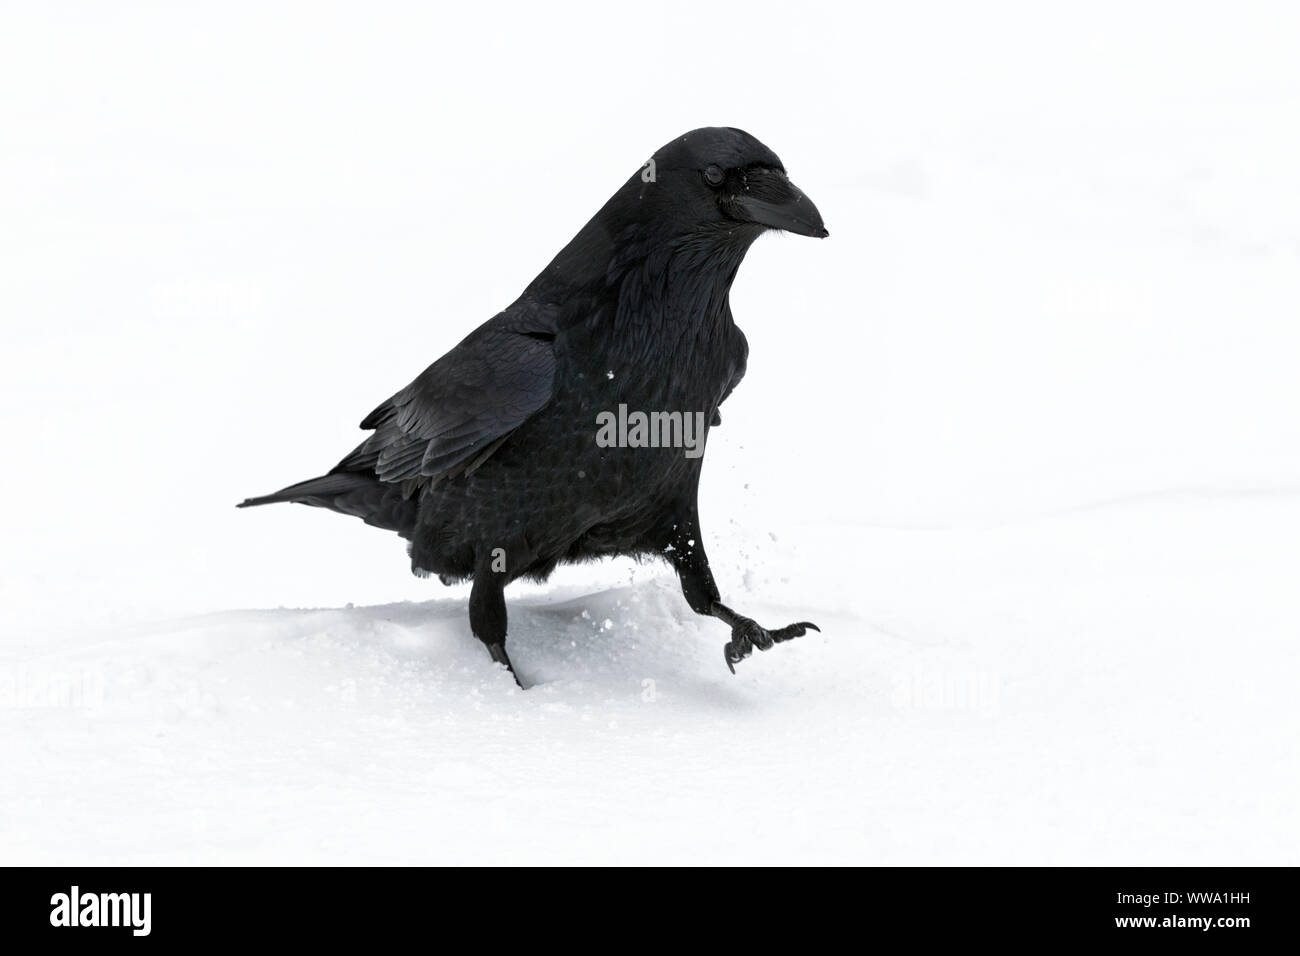 Grand corbeau, Corvus corax, un seul des oiseaux adultes walking in snow lors d'une averse de neige, Jasper, Canada, Novembre Banque D'Images